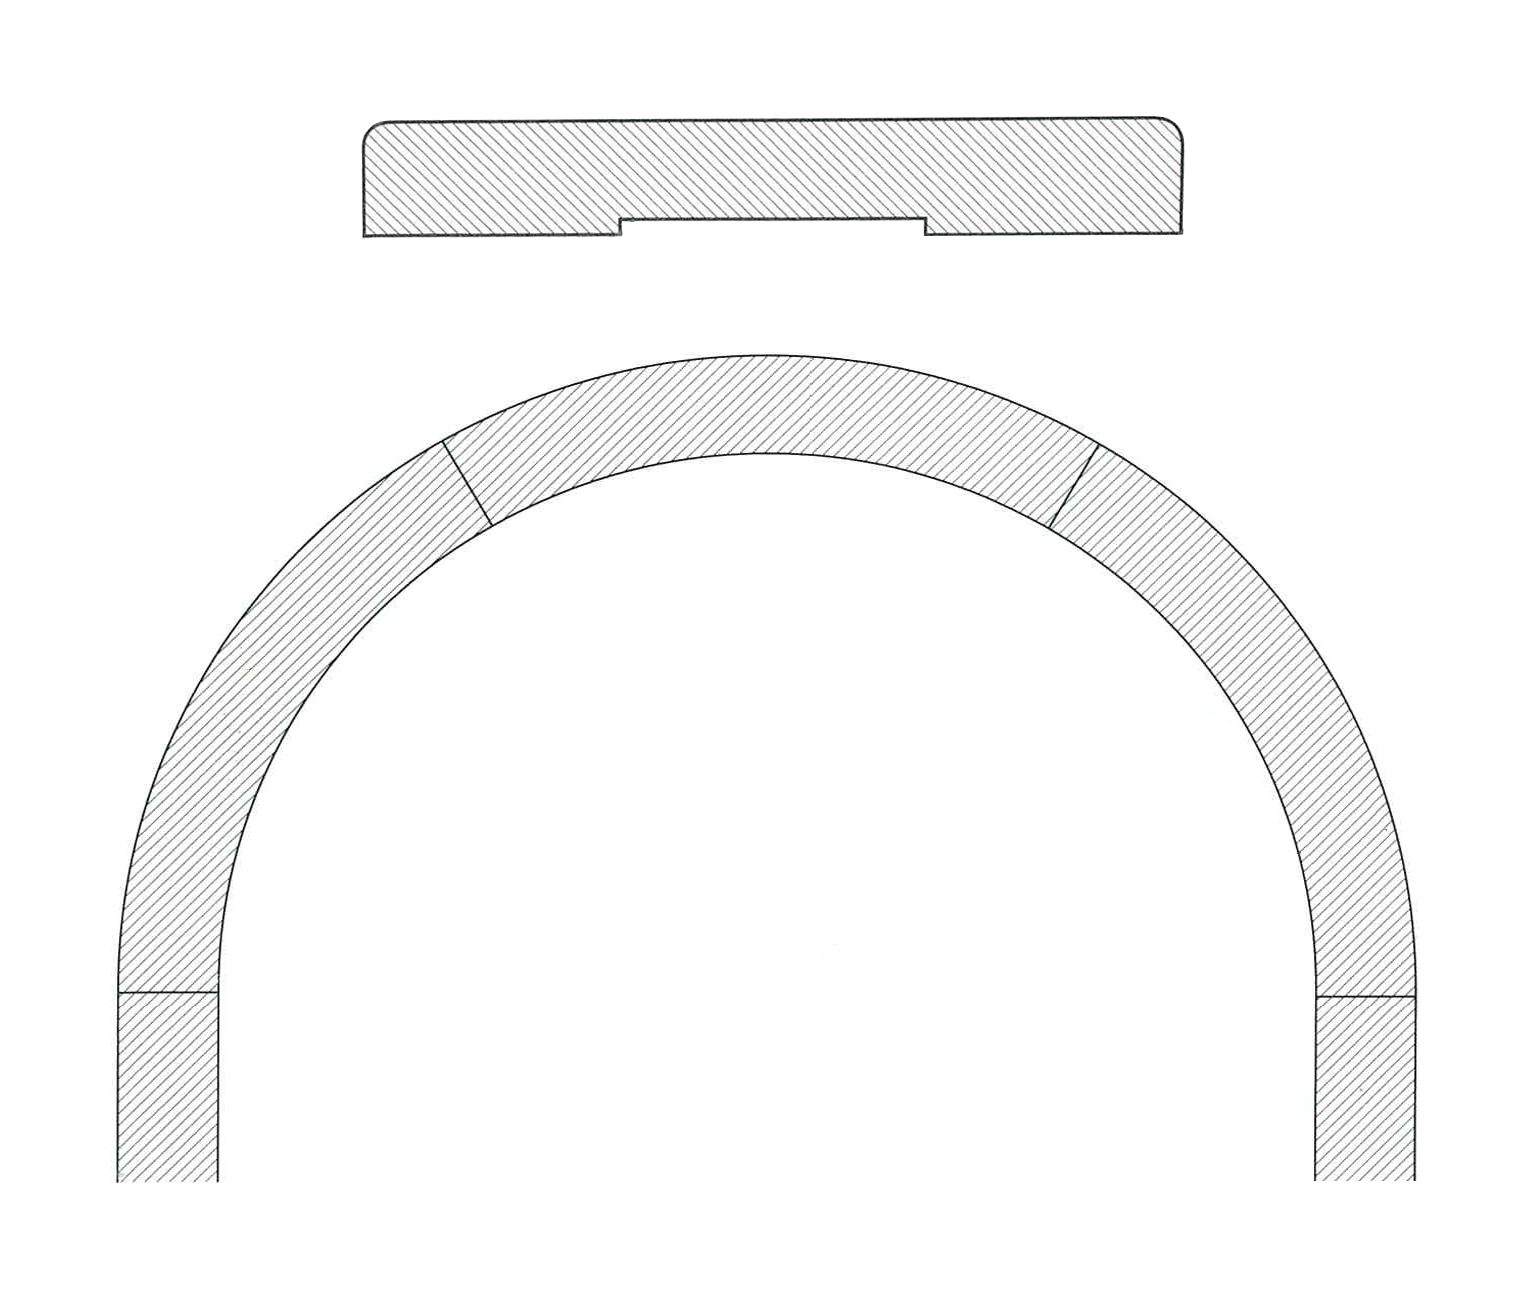 Coprifilo arco piatto massello d.860 est. bahia